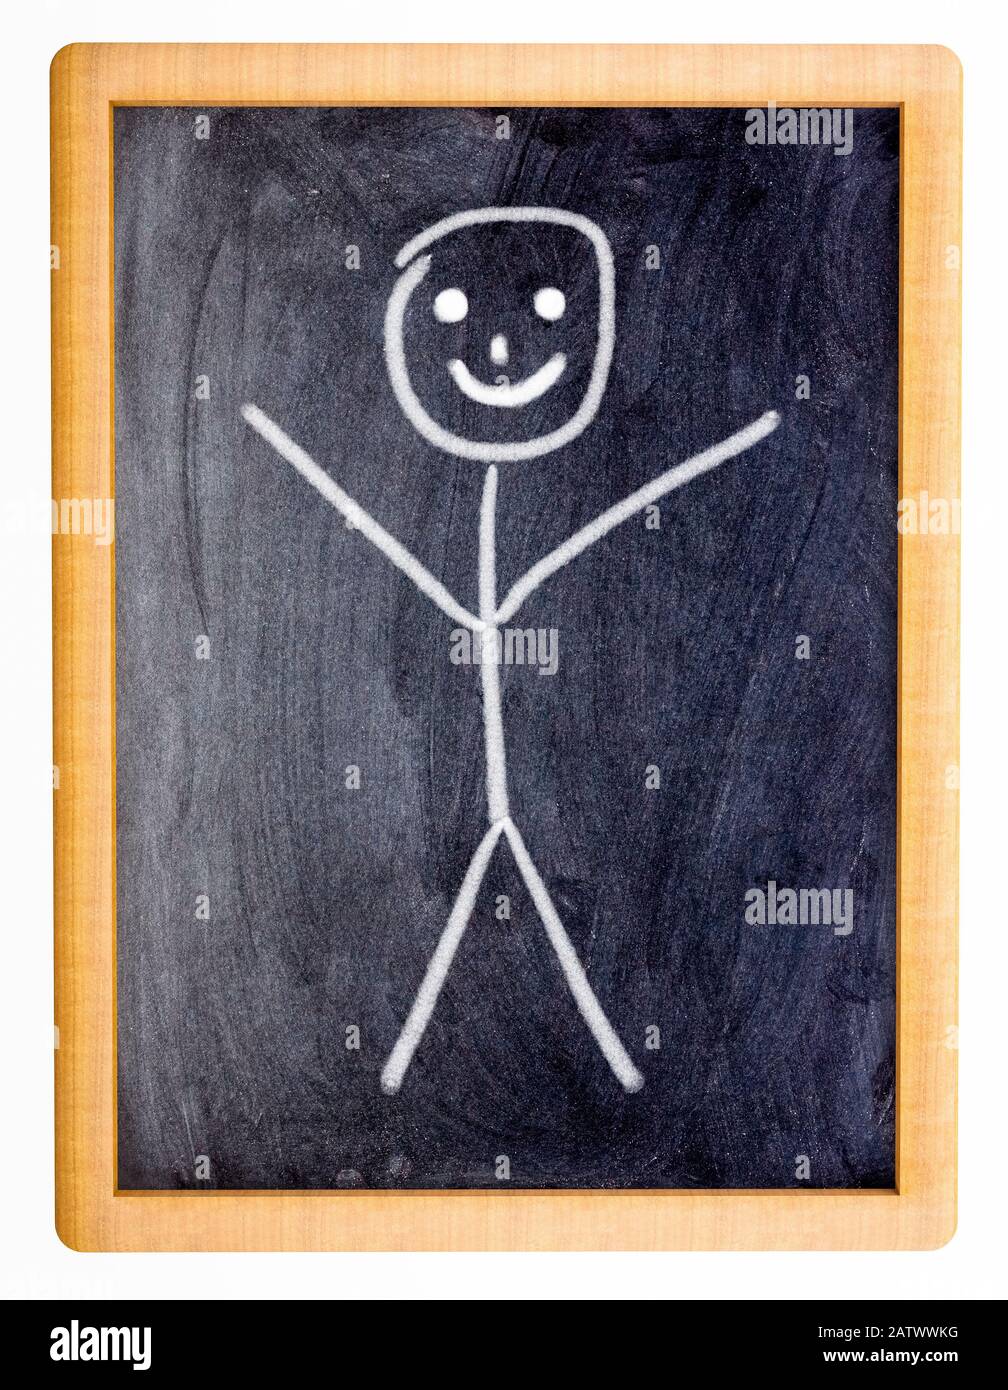 Kleine Tafel mit einer Child-Zeichnung eines lächelnden Knüppelmännchens Stockfoto